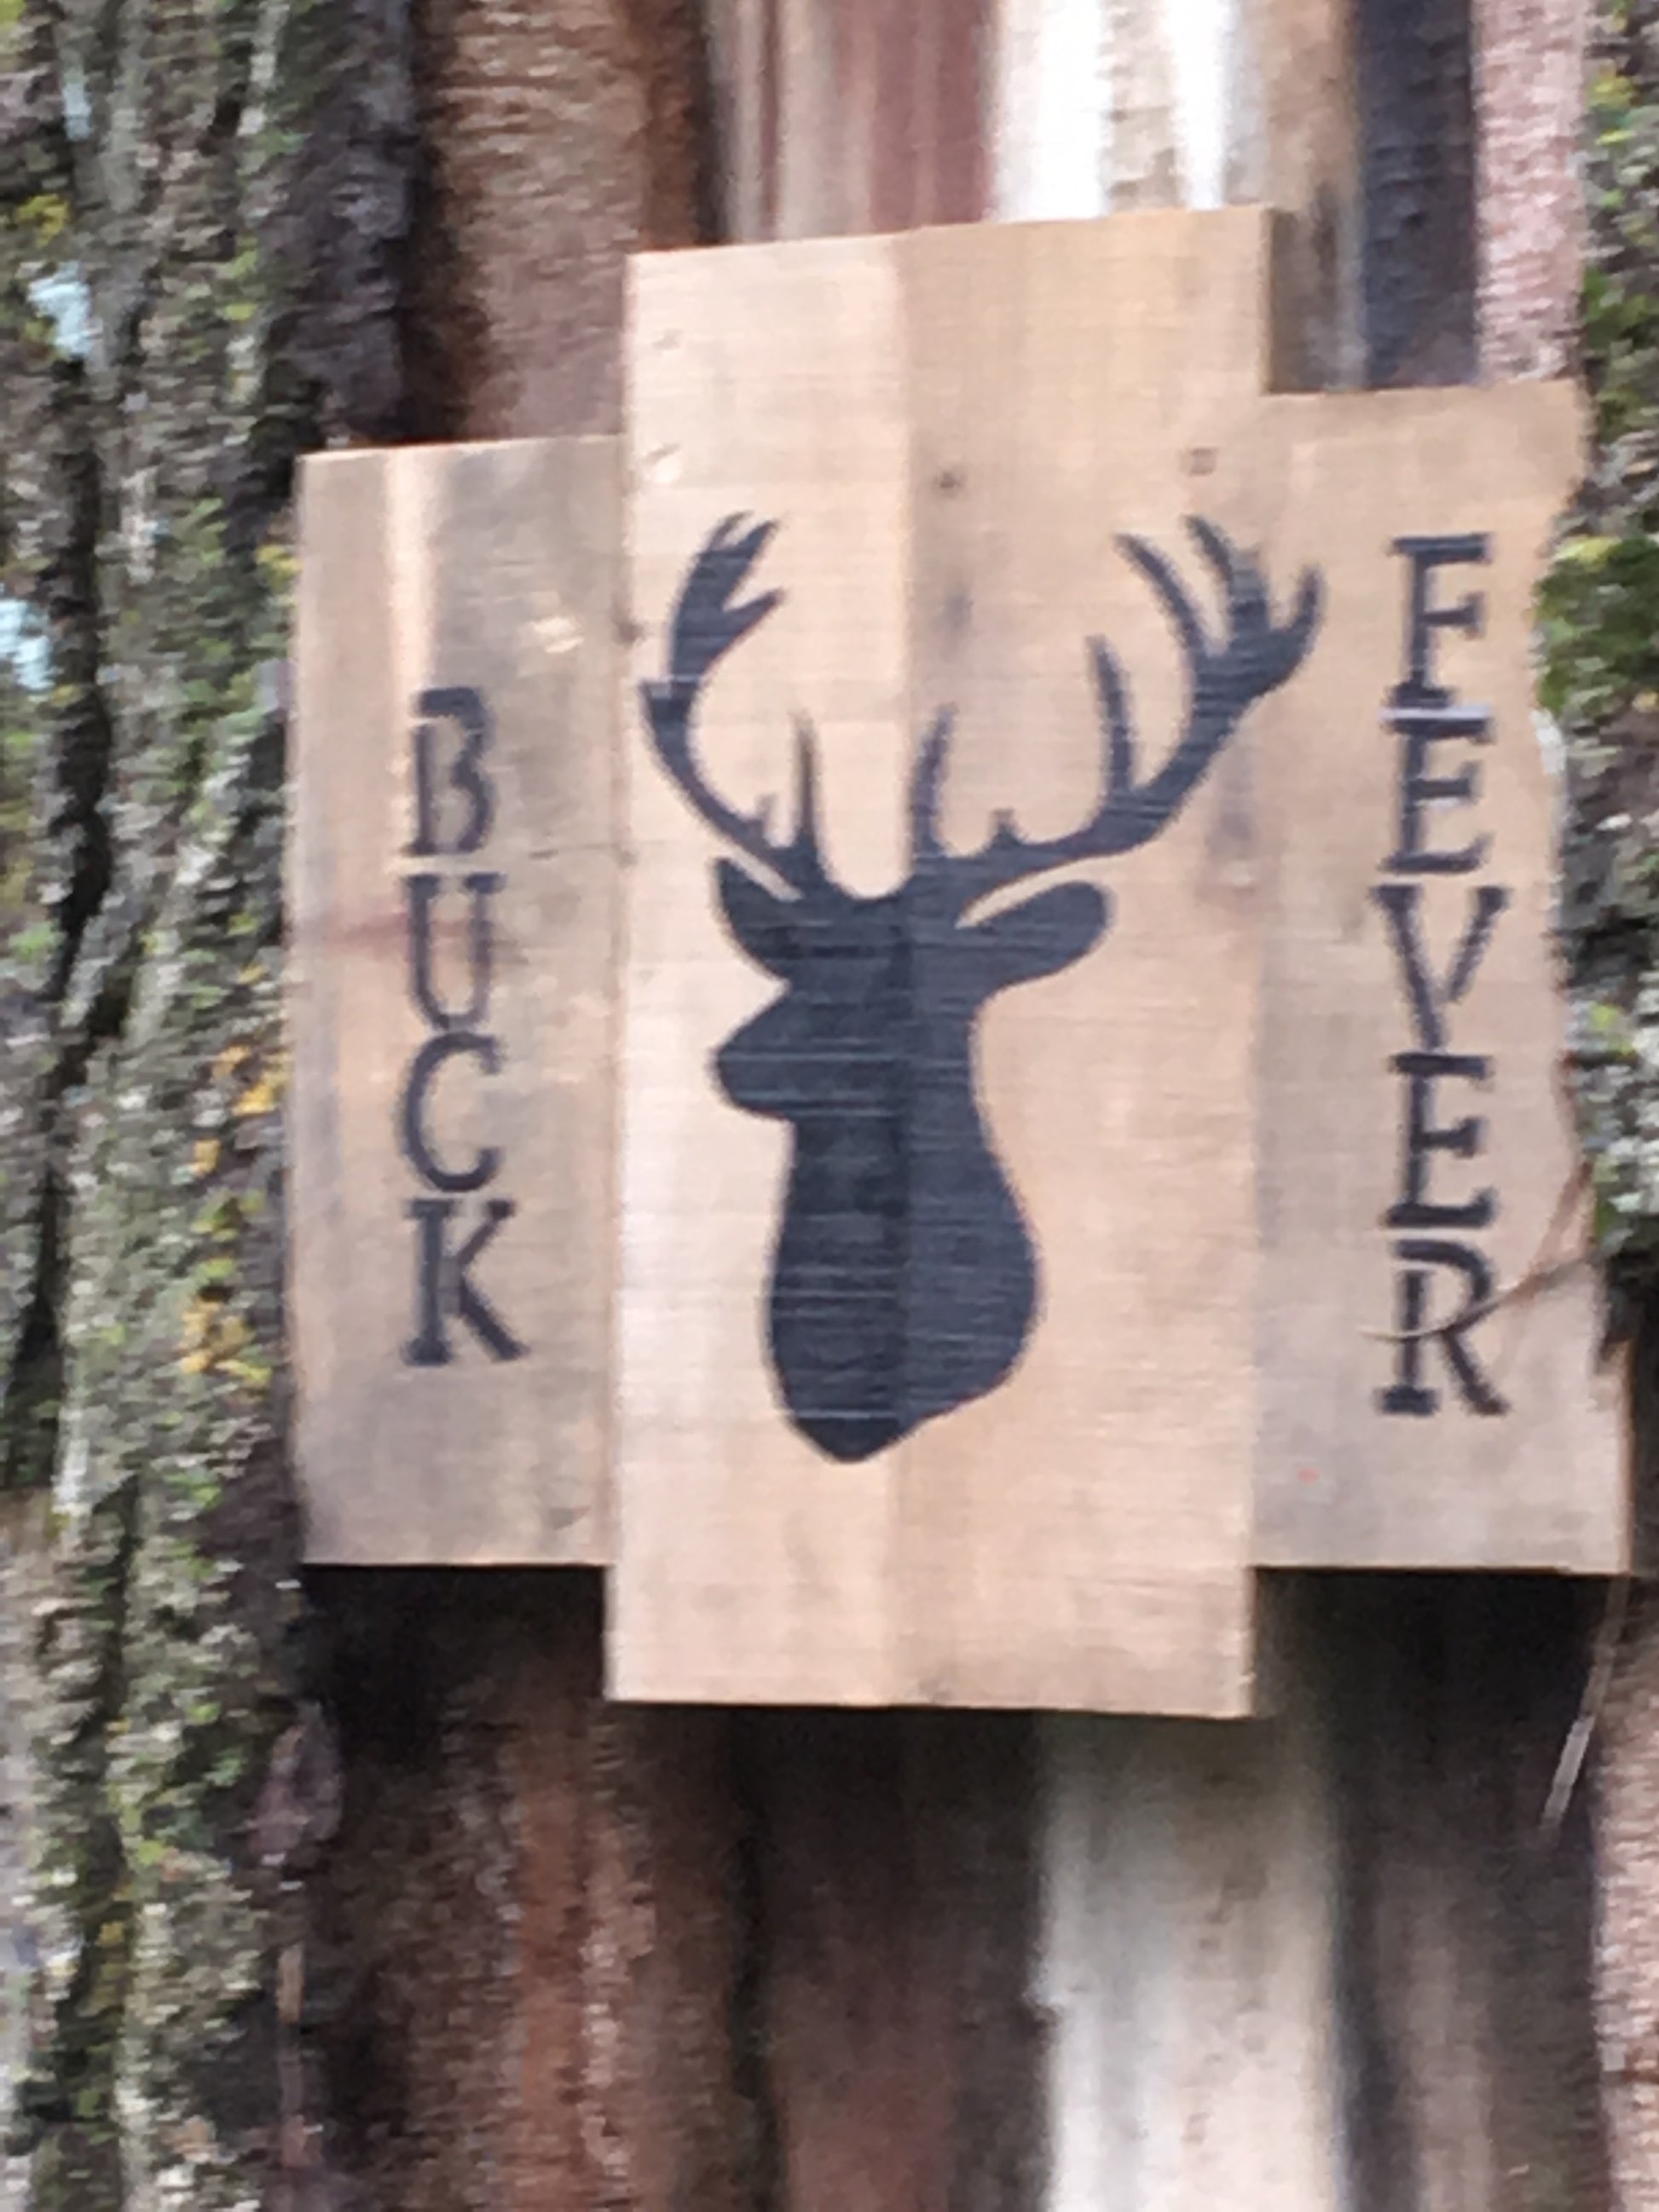 Buck Fever pallet sign in lightning strike of tree